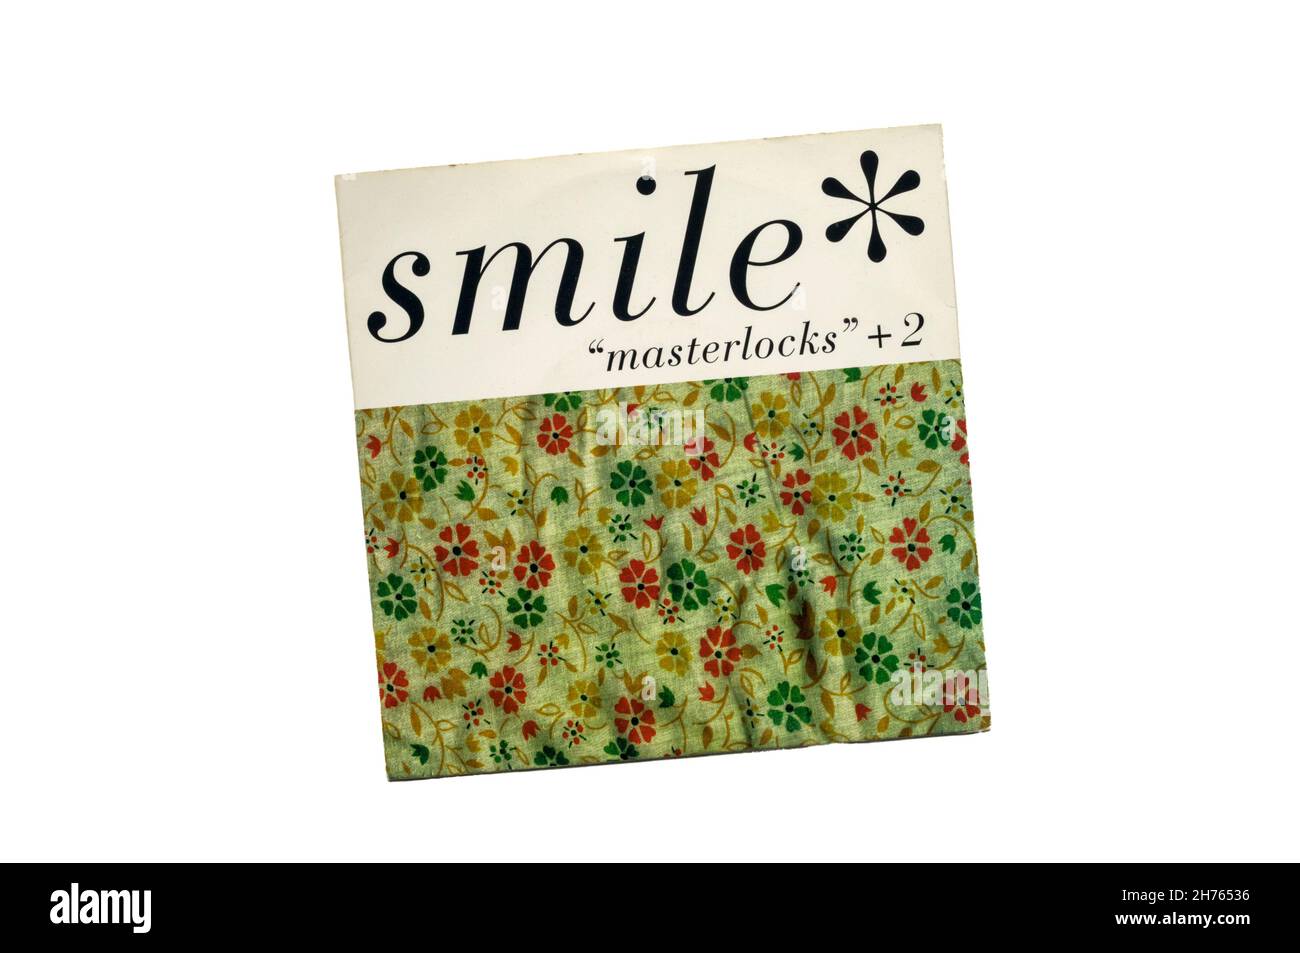 1996 7' single, 'Masterlocks' +2 de la banda estadounidense de rock alternativo Smile. Foto de stock